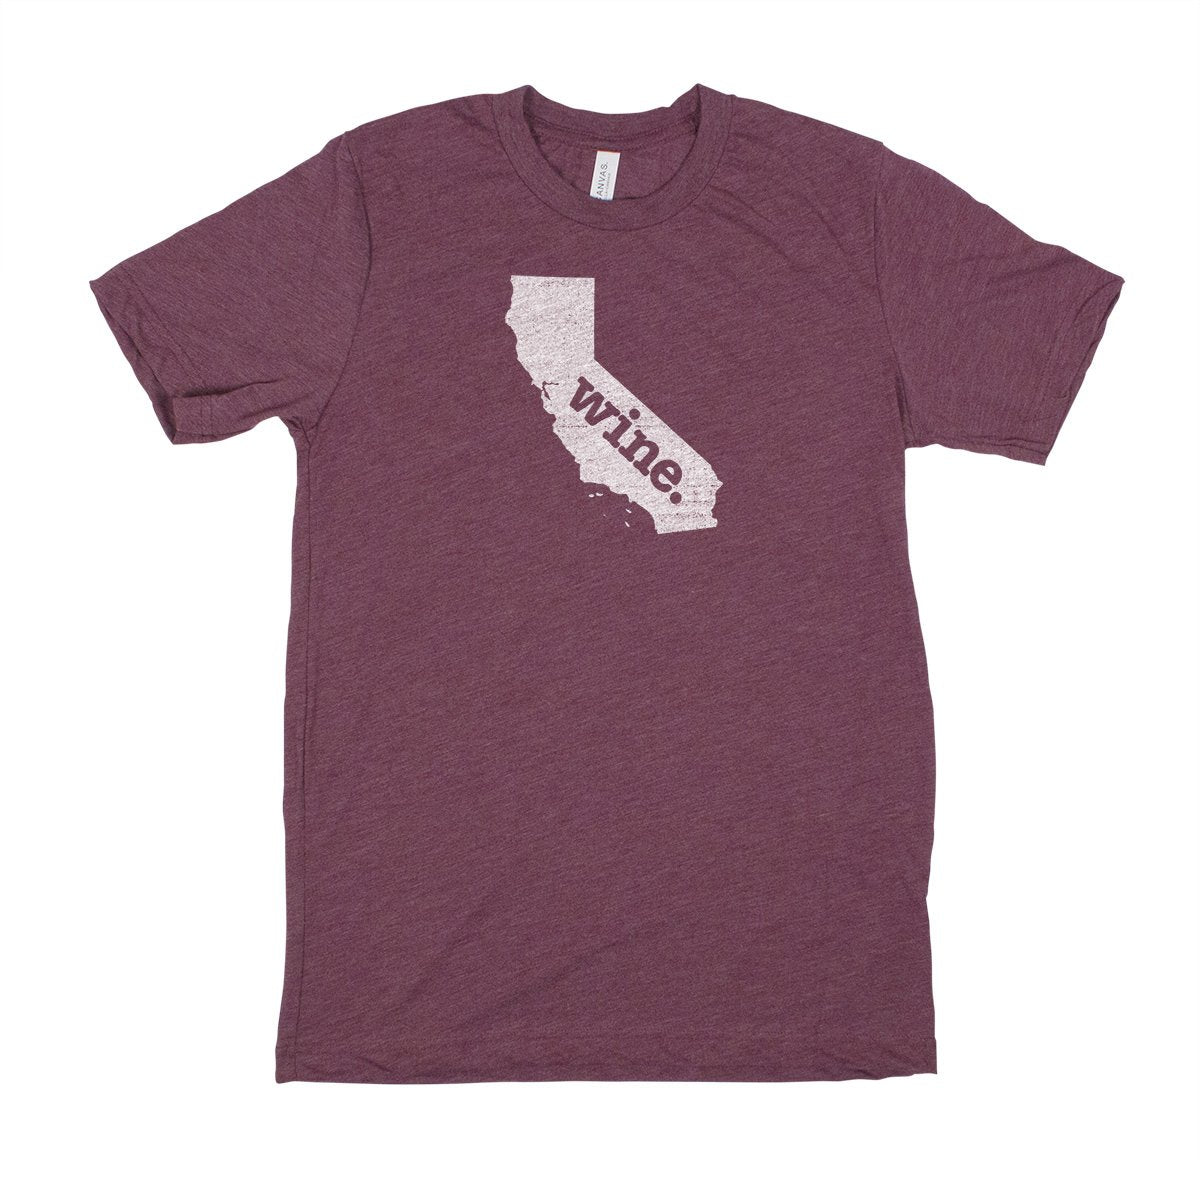 beer. Men's Unisex T-Shirt - Massachusetts